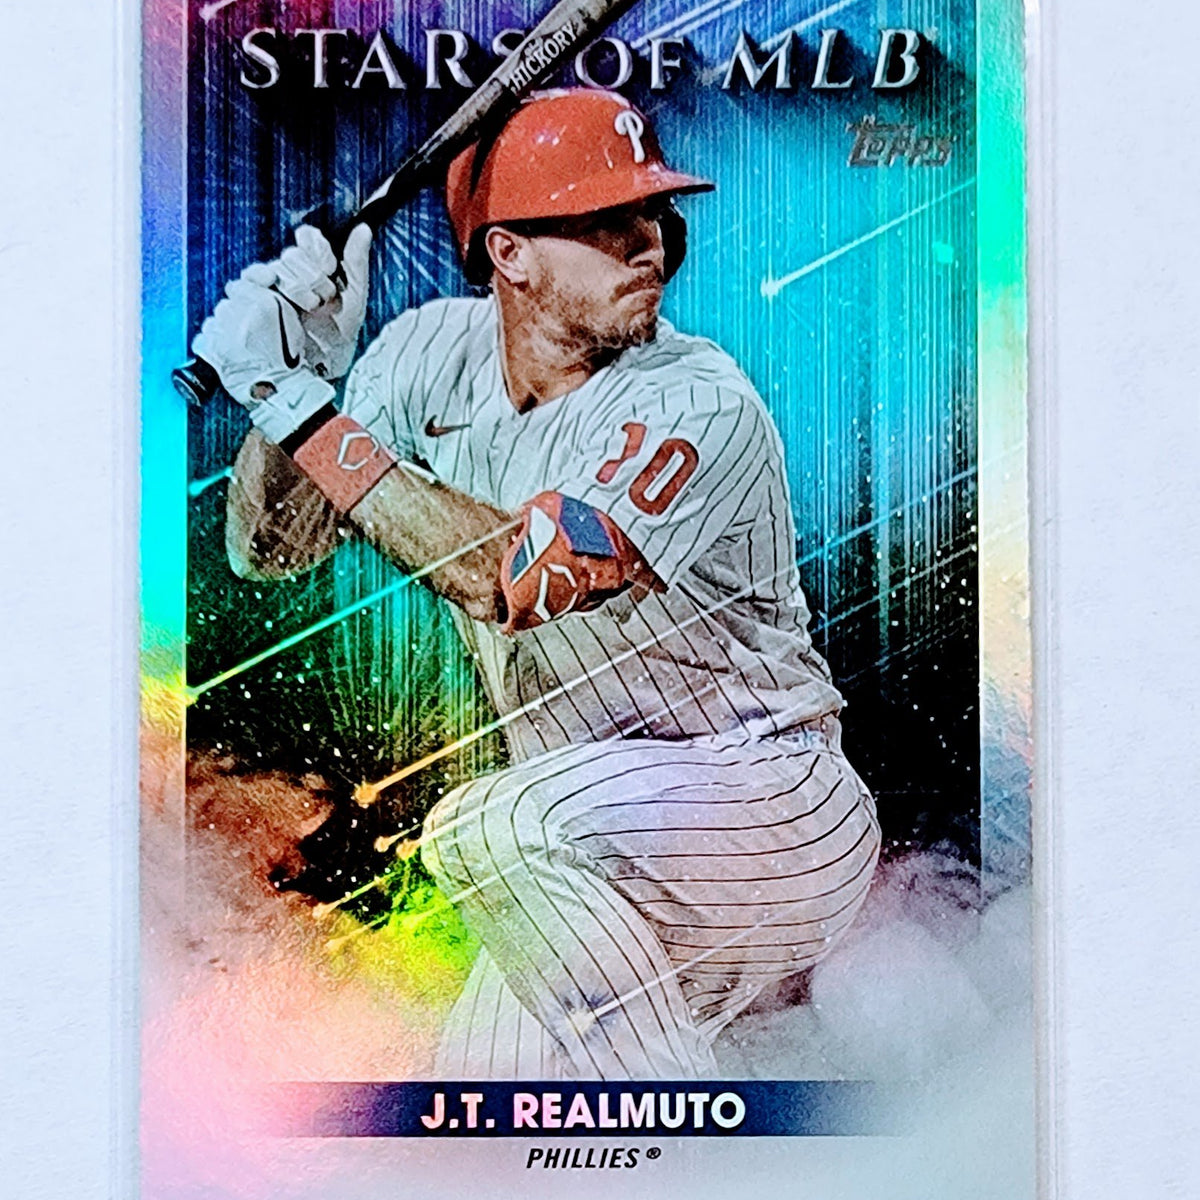 2022 Topps J.T. Realmuto Stars of the MLB Foil Refractor Baseball Card